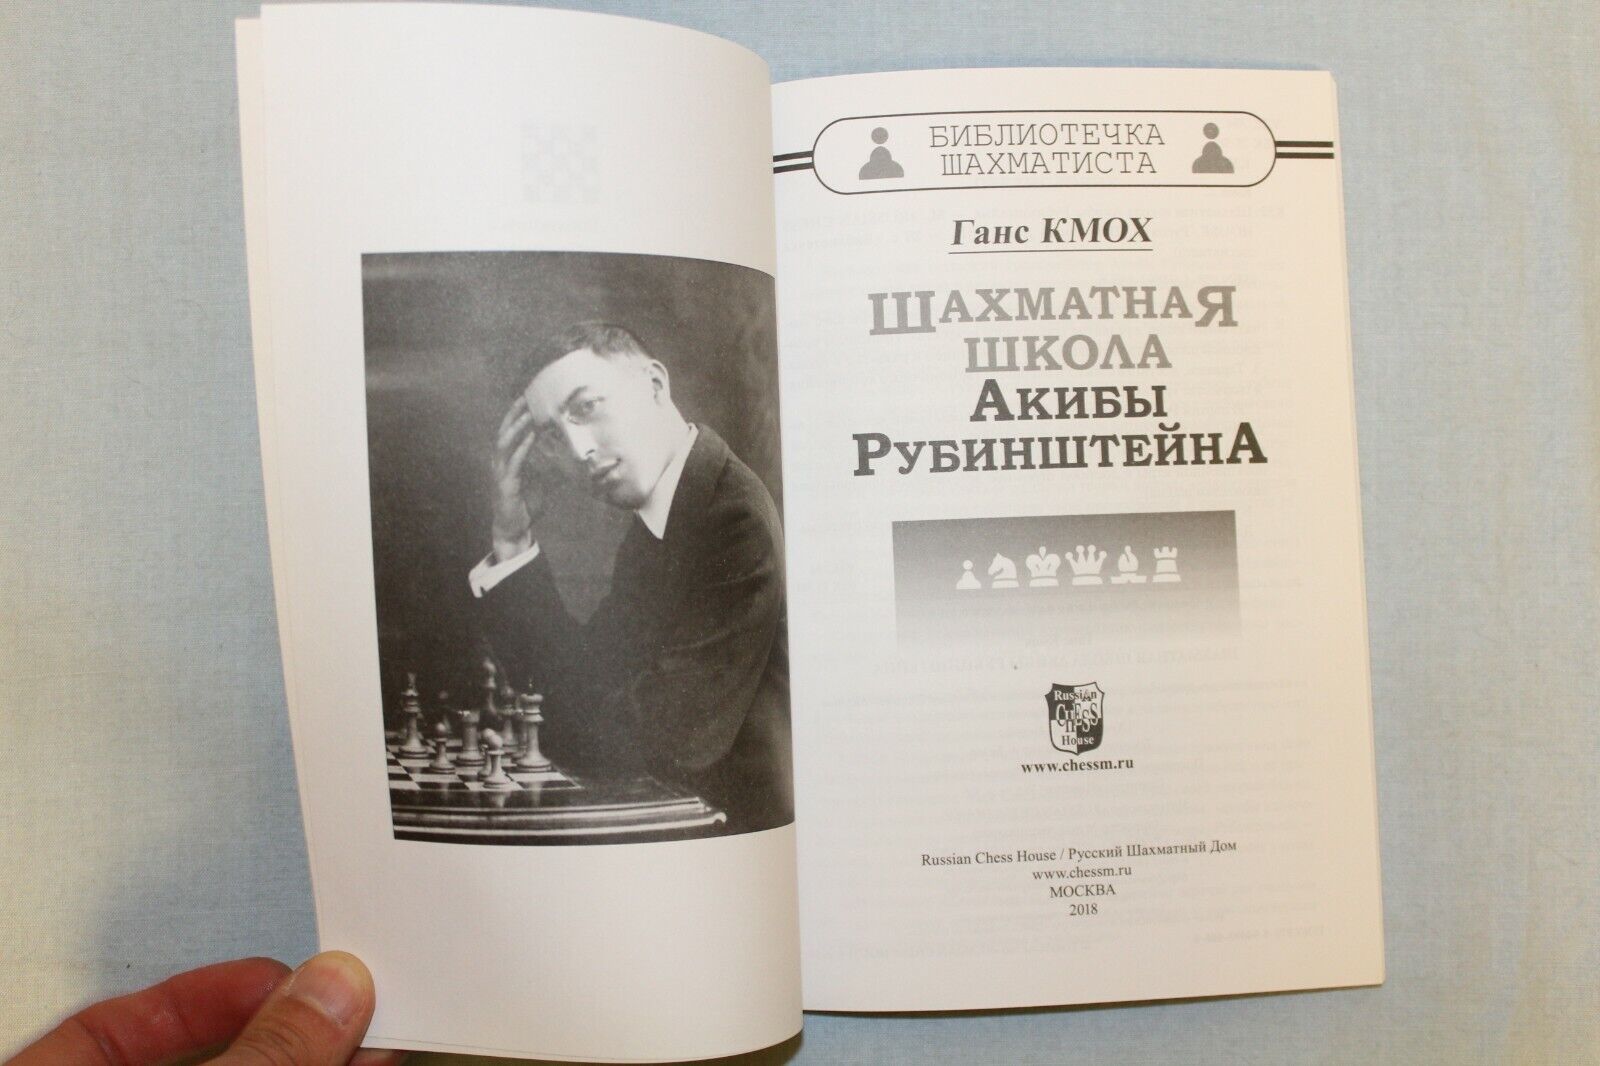 10718.3 Russian Books: History of Chess, Pillsbury's Lessons, Rubinstein's School